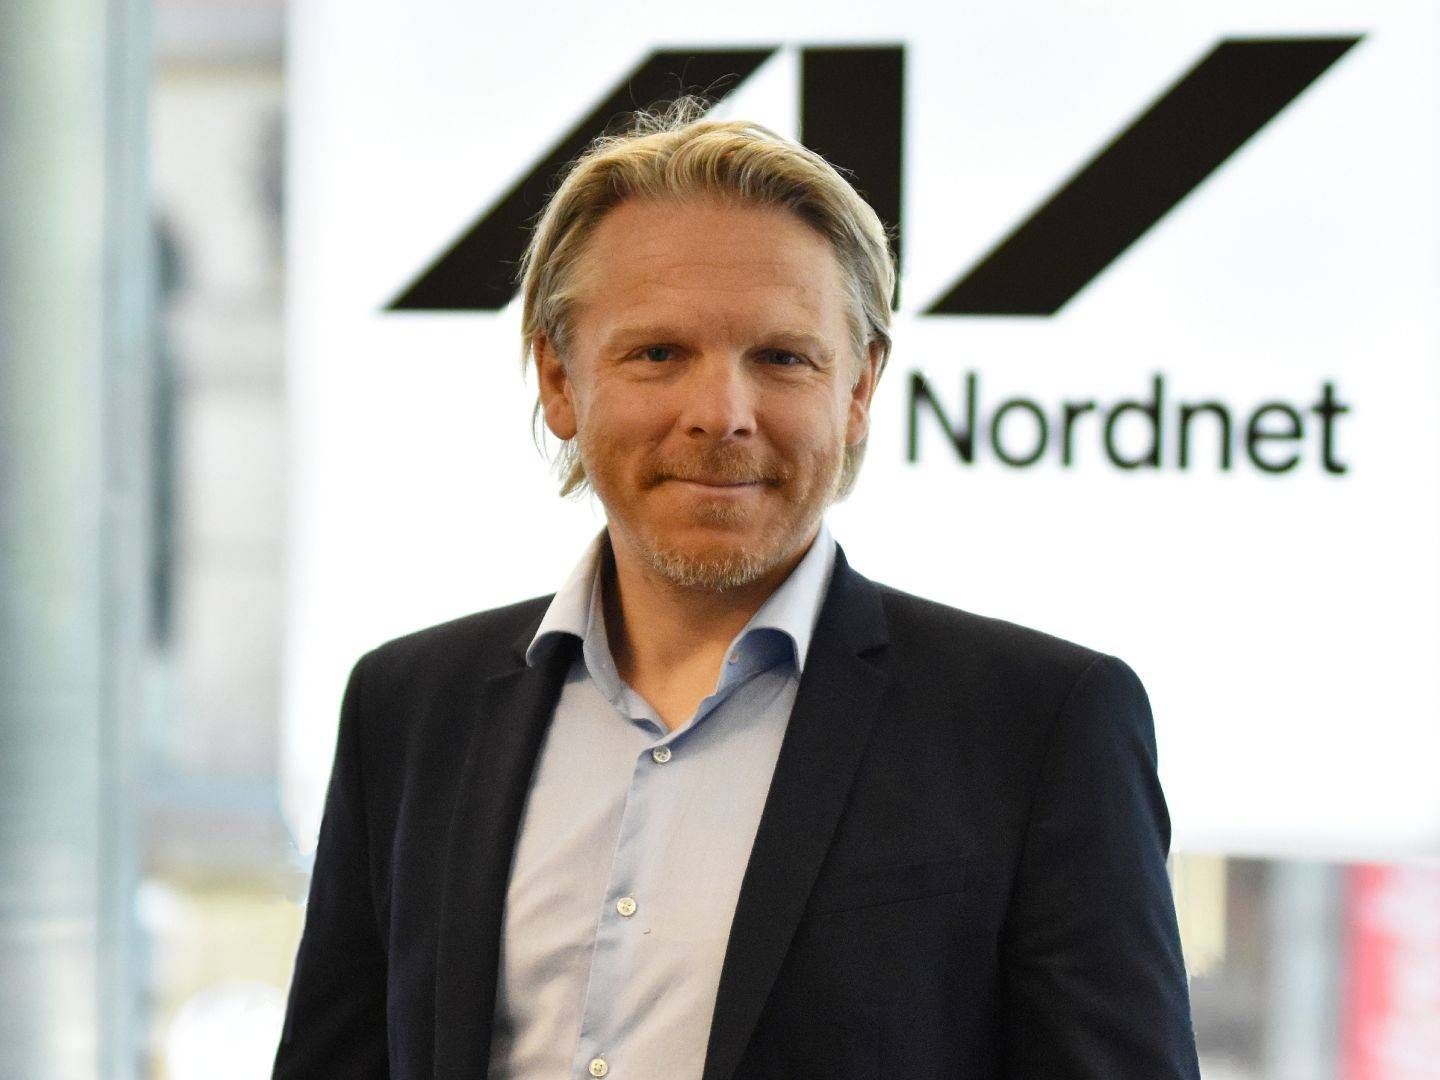 Anders Skar, CEO of Nordnet in Norway | Photo: Nordnet AB